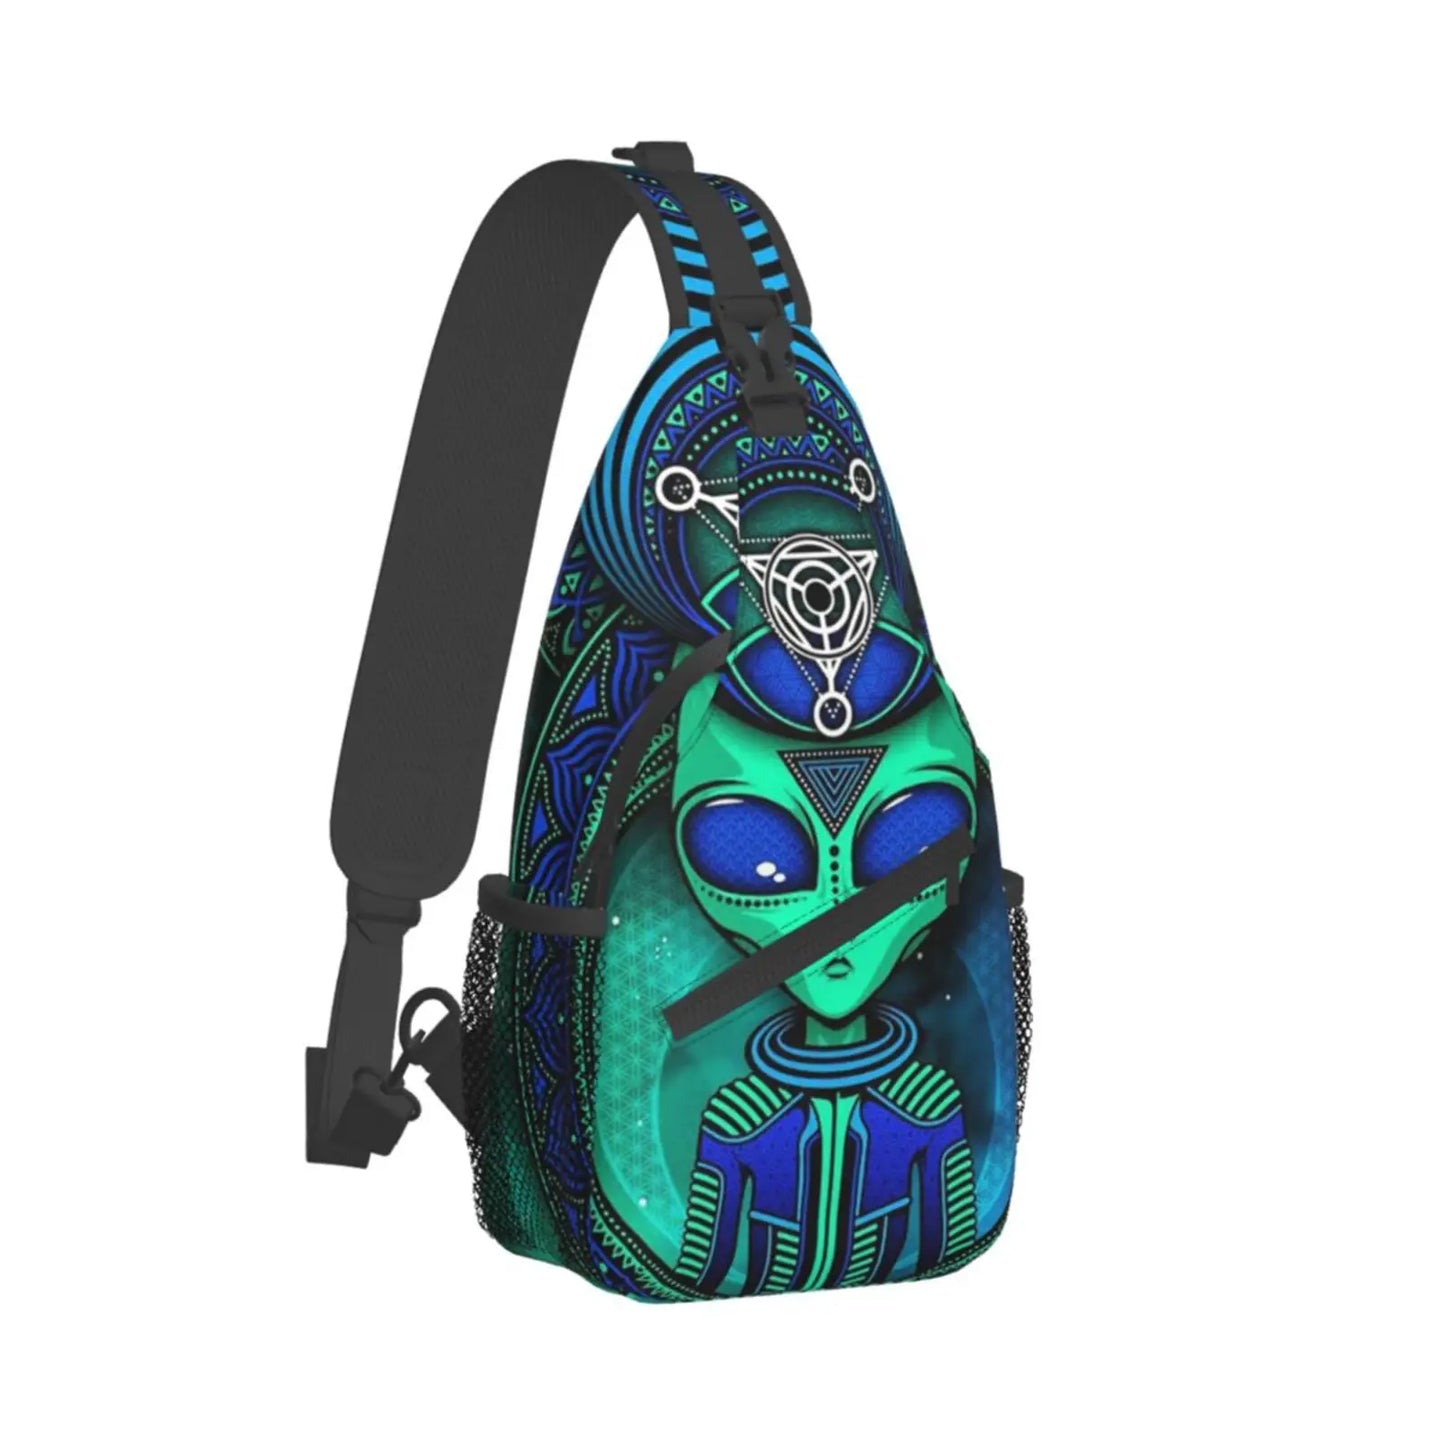 Alien 420 Bag Teardrop Backpack Crossbody Backpack Unisex Sling Chest Bag Gym Bag Travel Bag